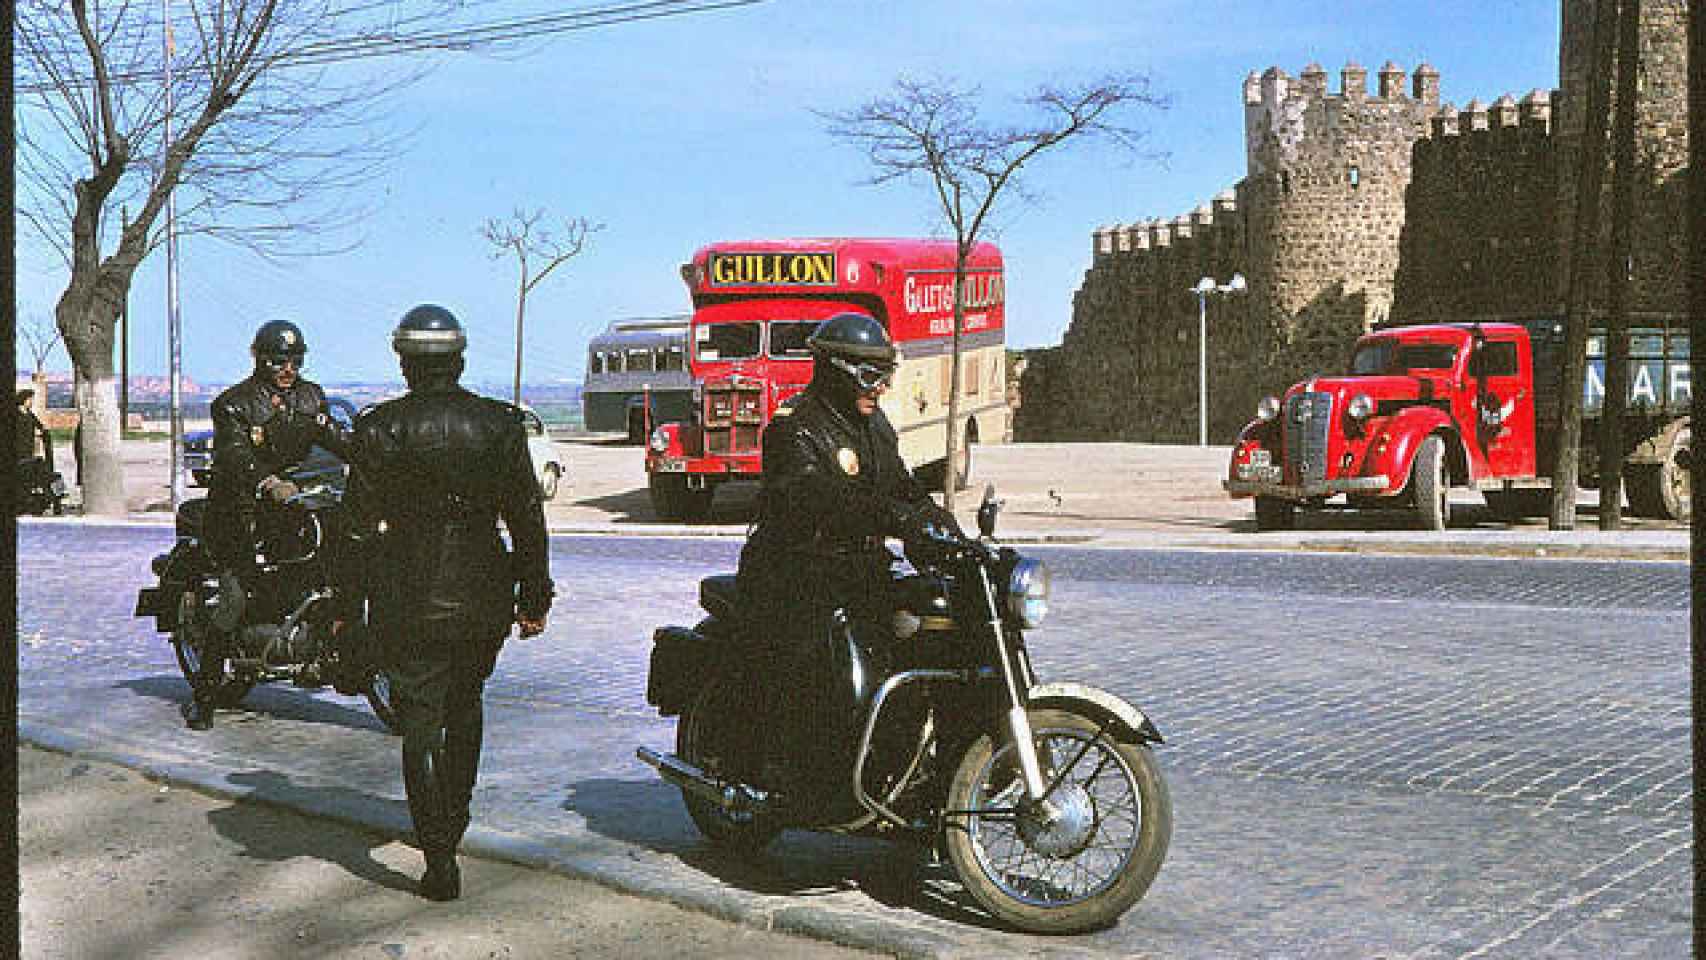 Guardias civiles y camión de Galletas Gullón en el Paseo de Merchán de Toledo